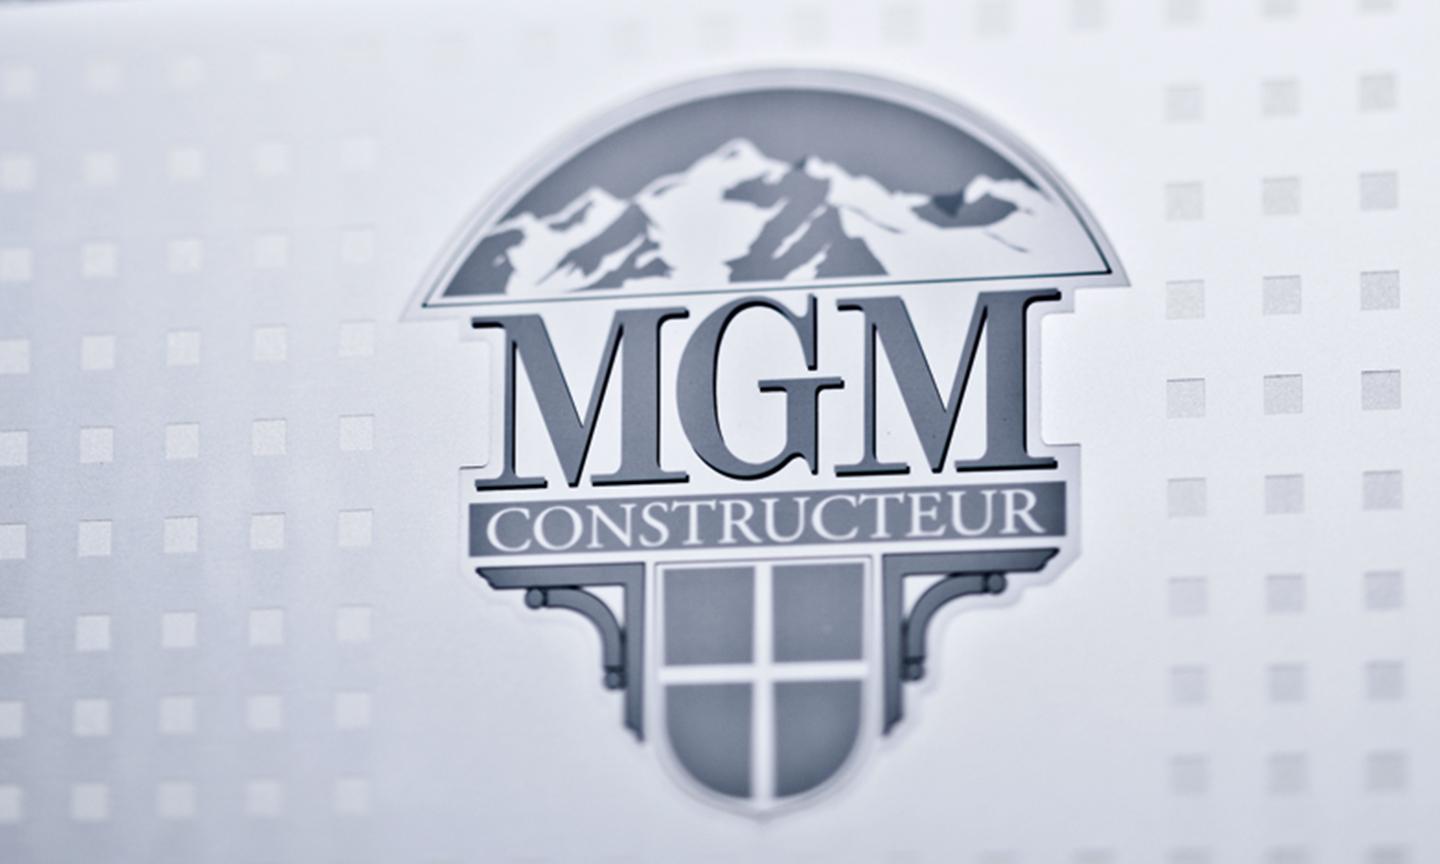 Notre hitoire - Logo MGM Constructeur